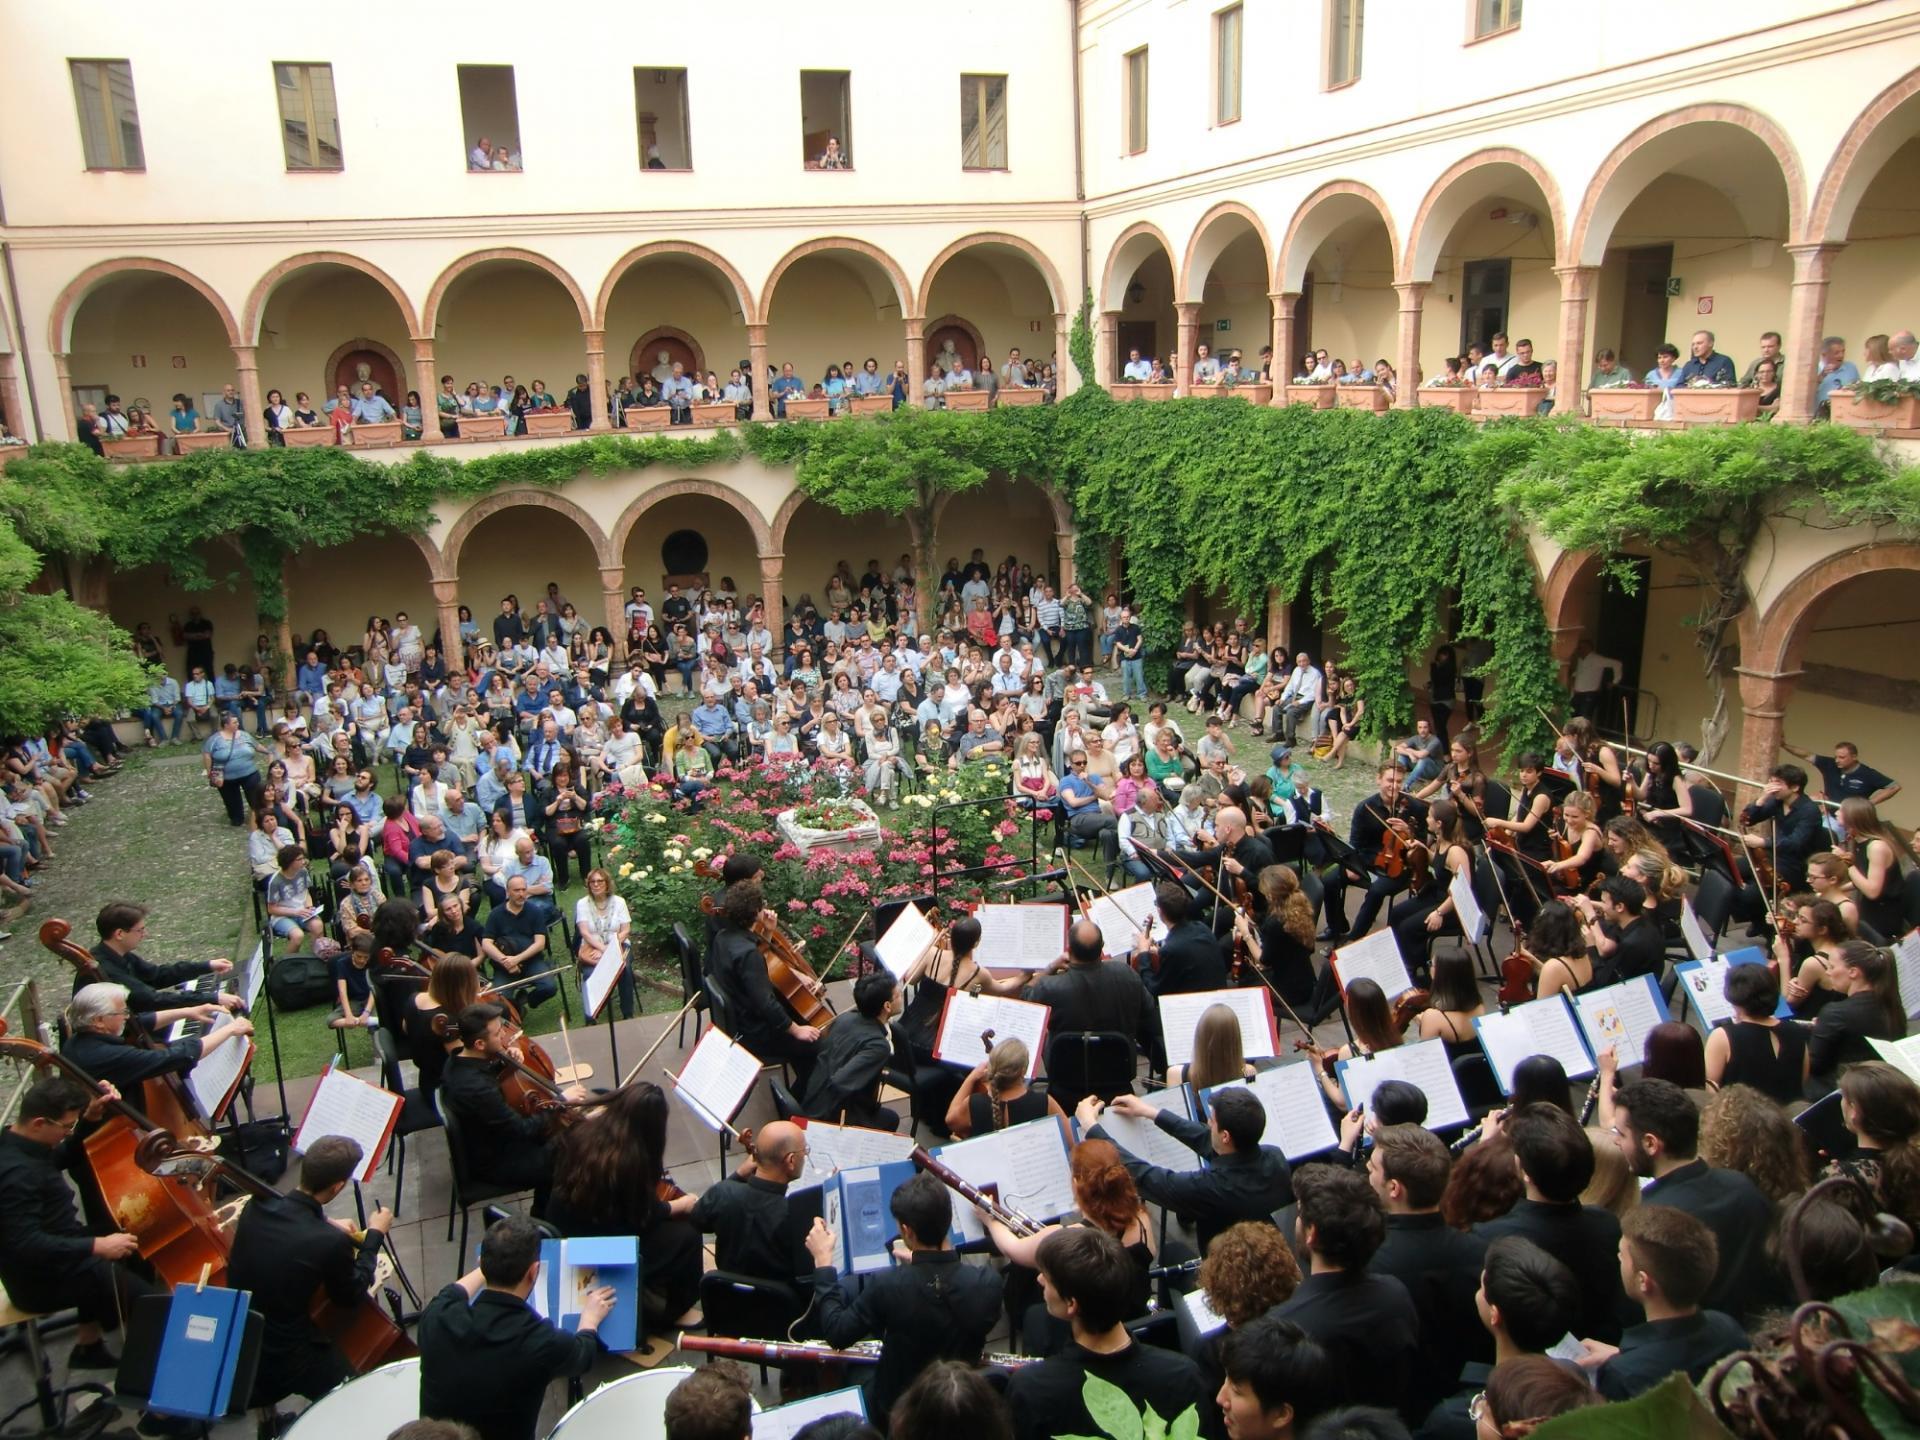 Il Conservatorio "Arrigo Boito" di Parma